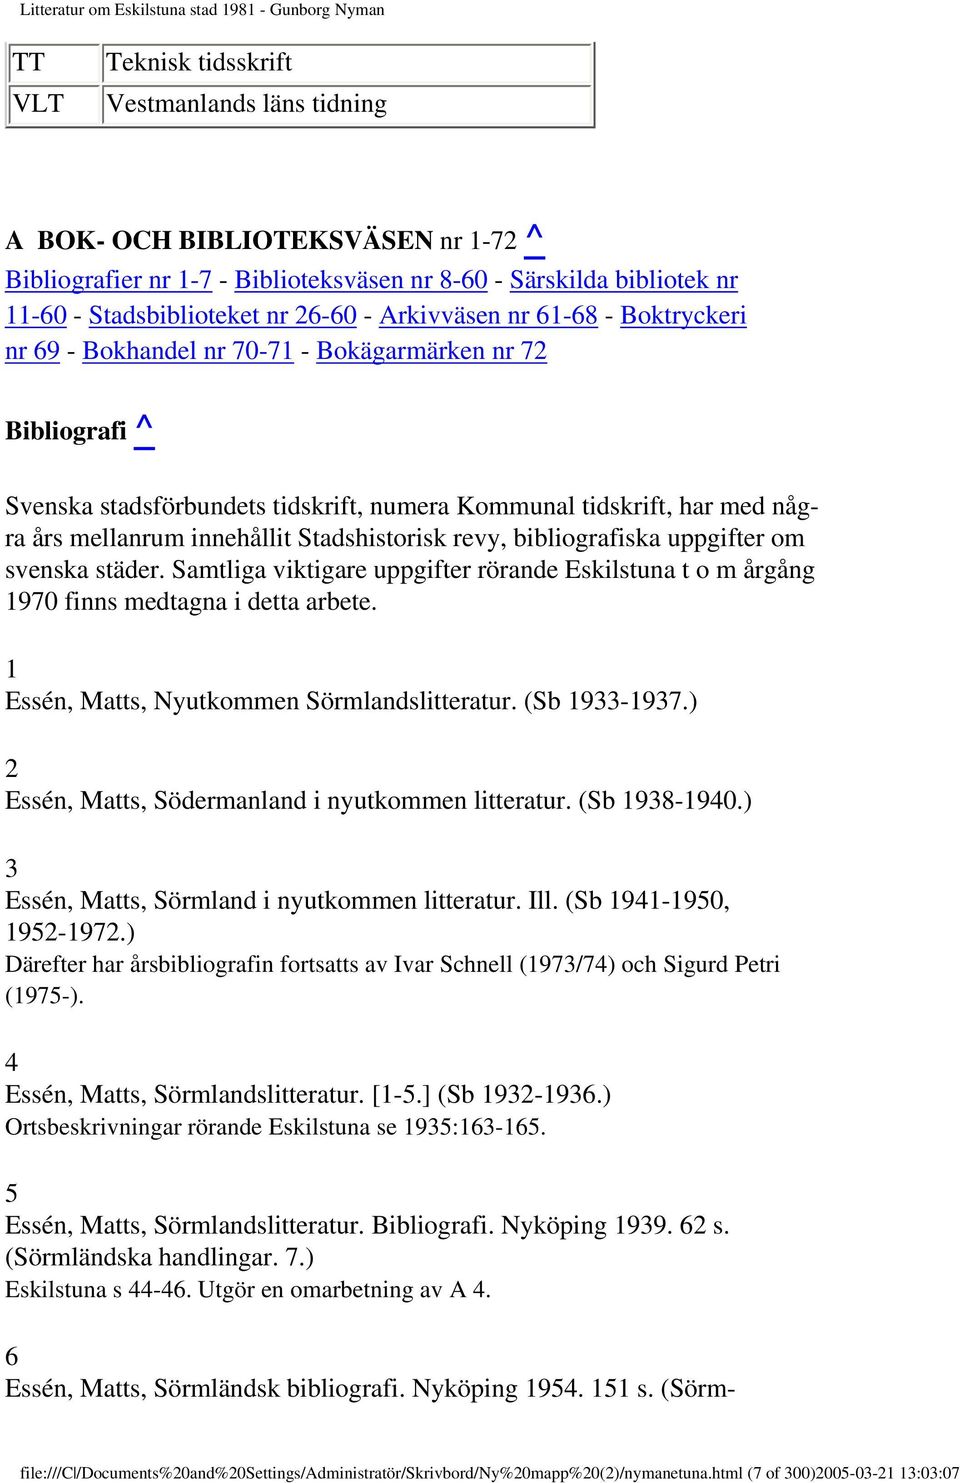 Stadshistorisk revy, bibliografiska uppgifter om svenska städer. Samtliga viktigare uppgifter rörande Eskilstuna t o m årgång 1970 finns medtagna i detta arbete.